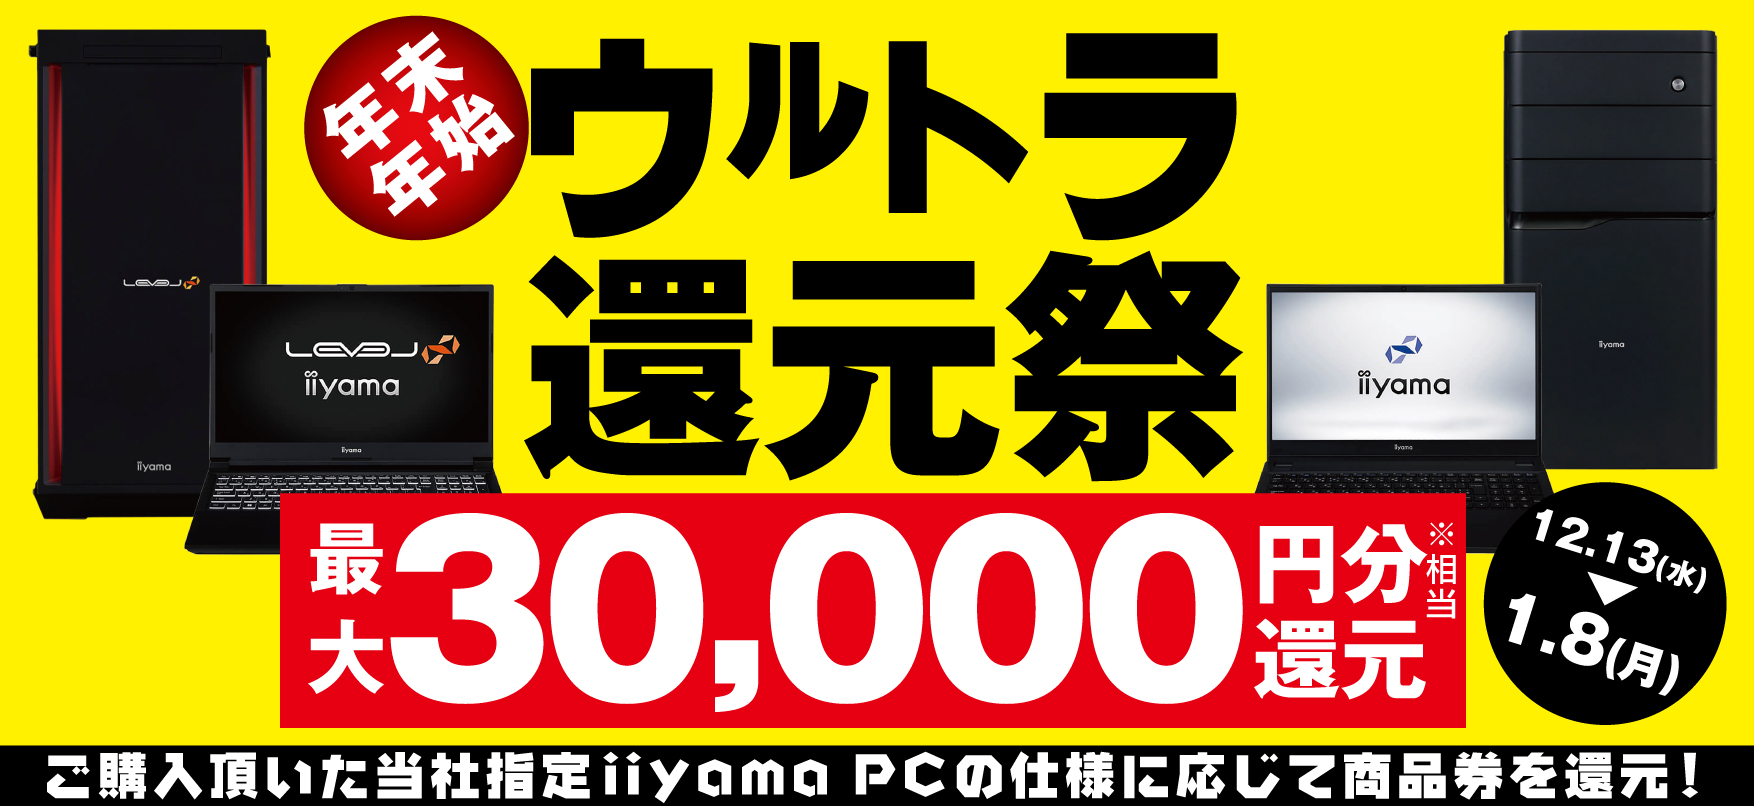 パソコン工房 商品券 3万円分ショッピング